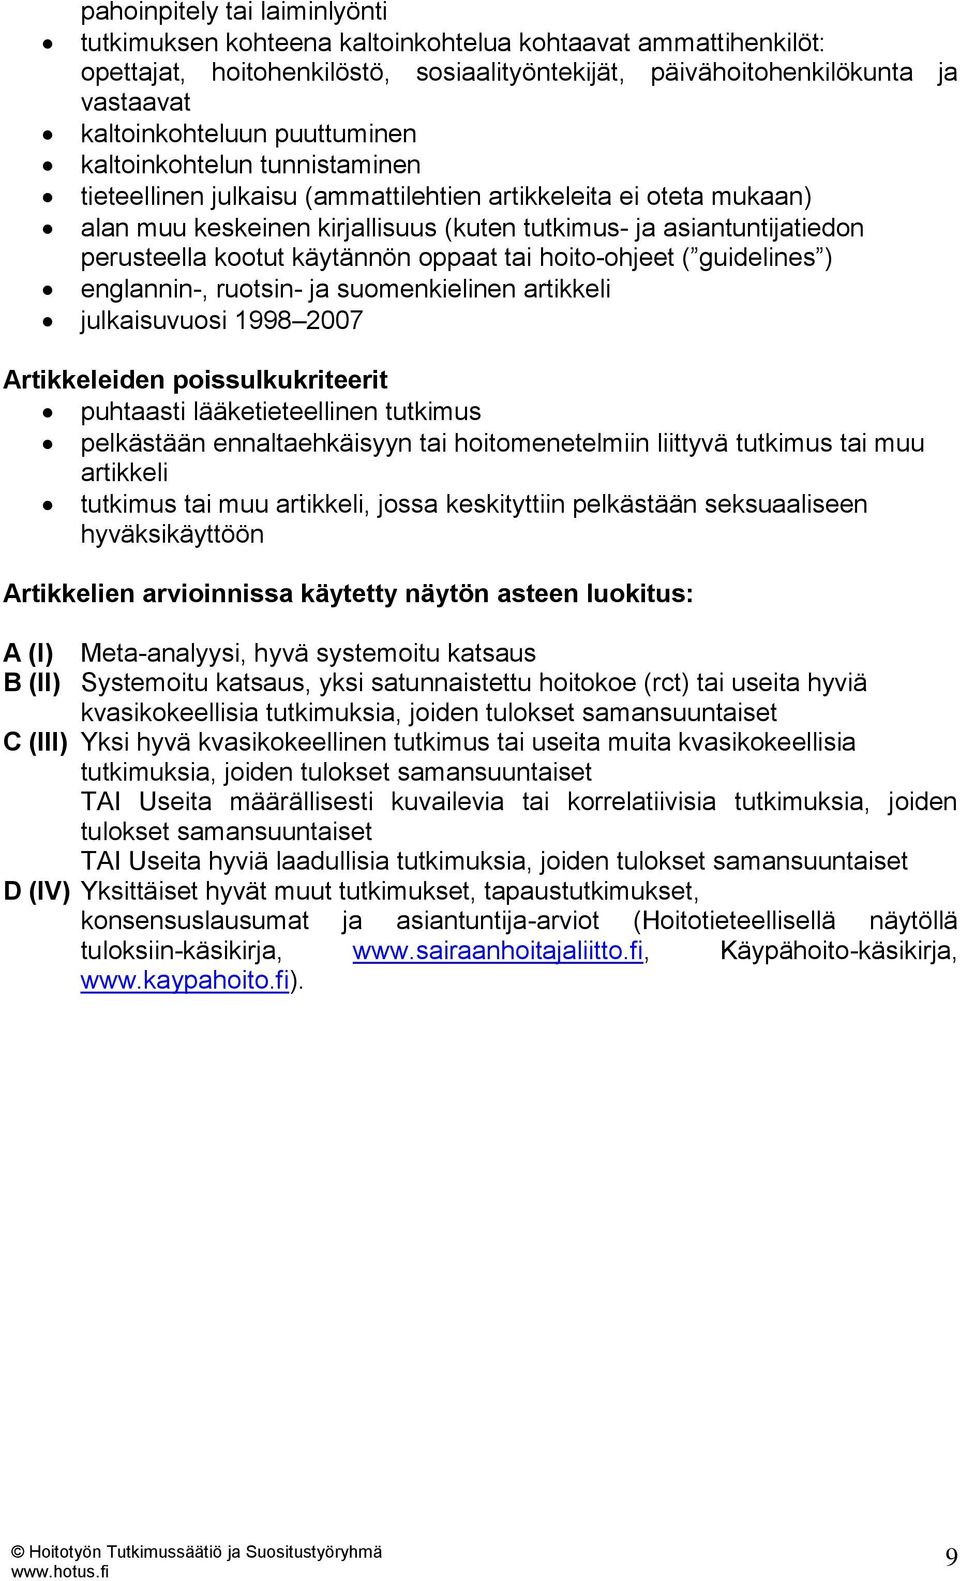 käytännön oppaat tai hoito-ohjeet ( guidelines ) englannin-, ruotsin- ja suomenkielinen artikkeli julkaisuvuosi 1998 2007 Artikkeleiden poissulkukriteerit puhtaasti lääketieteellinen tutkimus